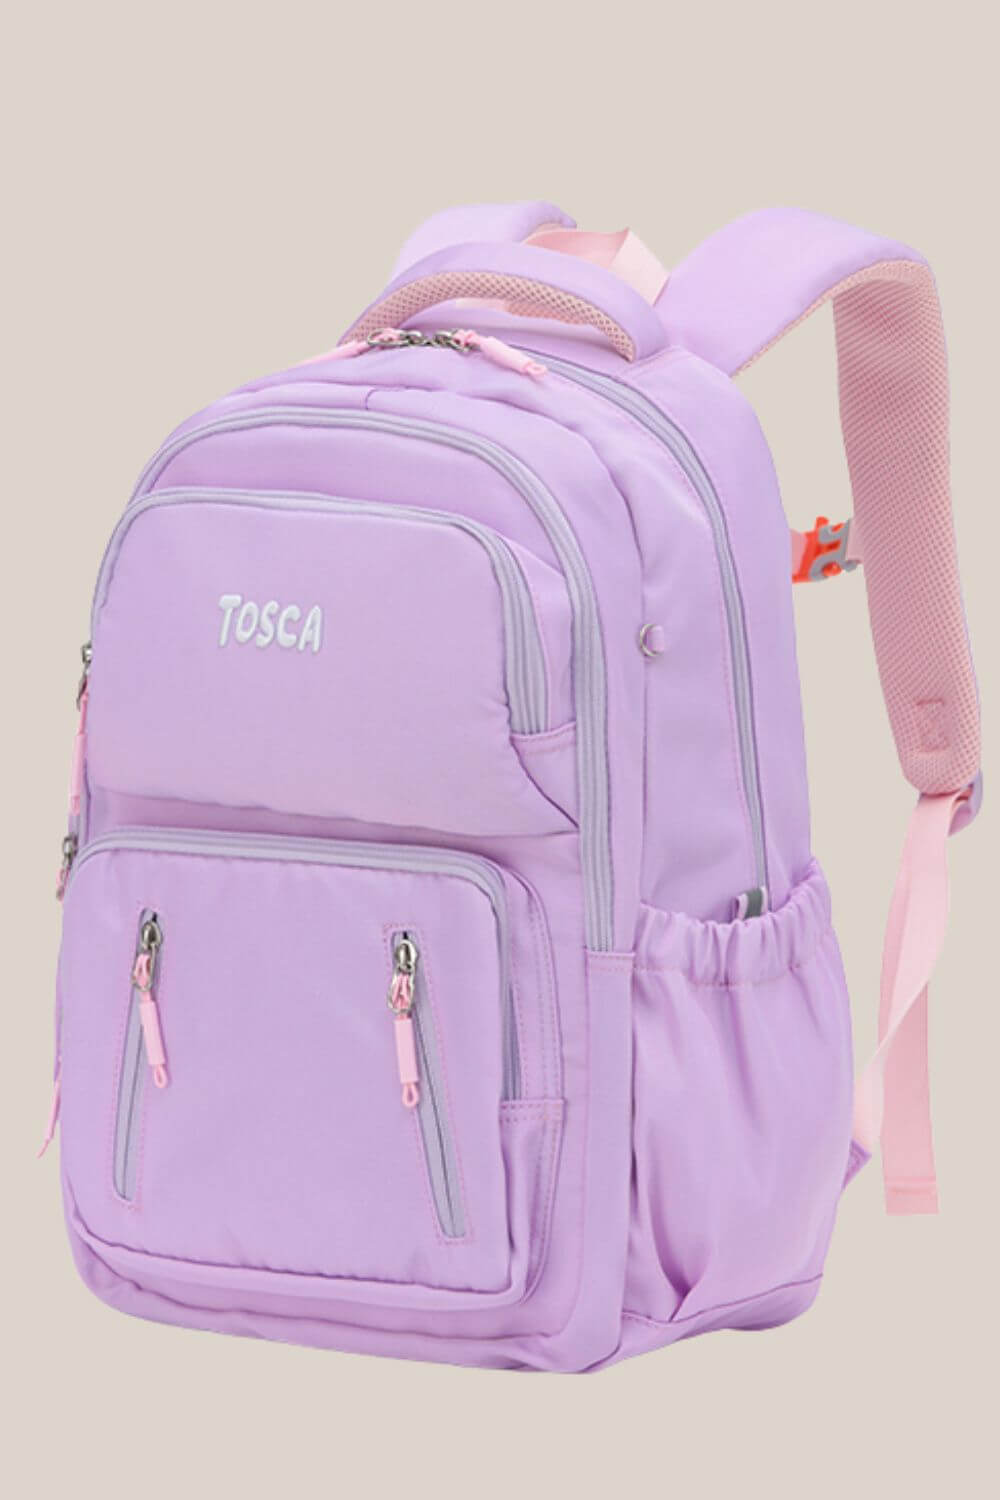 Tosca Kids Backpack